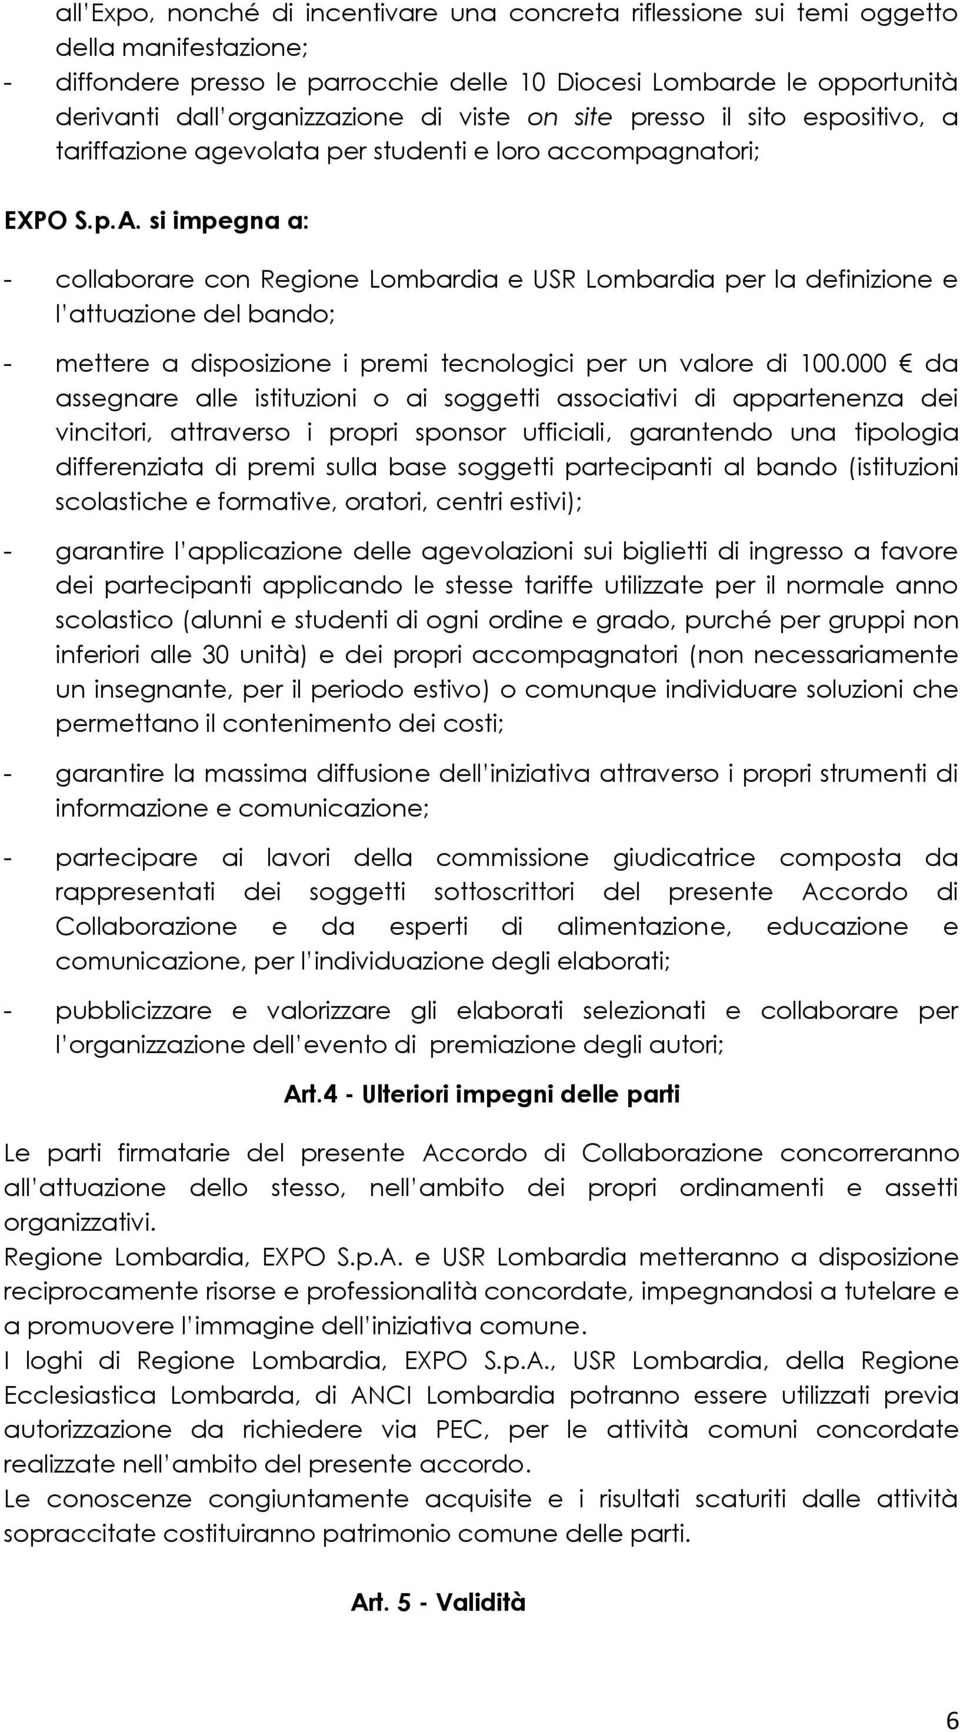 si impgna a: - collaborar con Rgion Lombardia USR Lombardia pr la dfinizion l attuazion dl bando; - mttr a disposizion i prmi tcnologici pr un valor di 100.